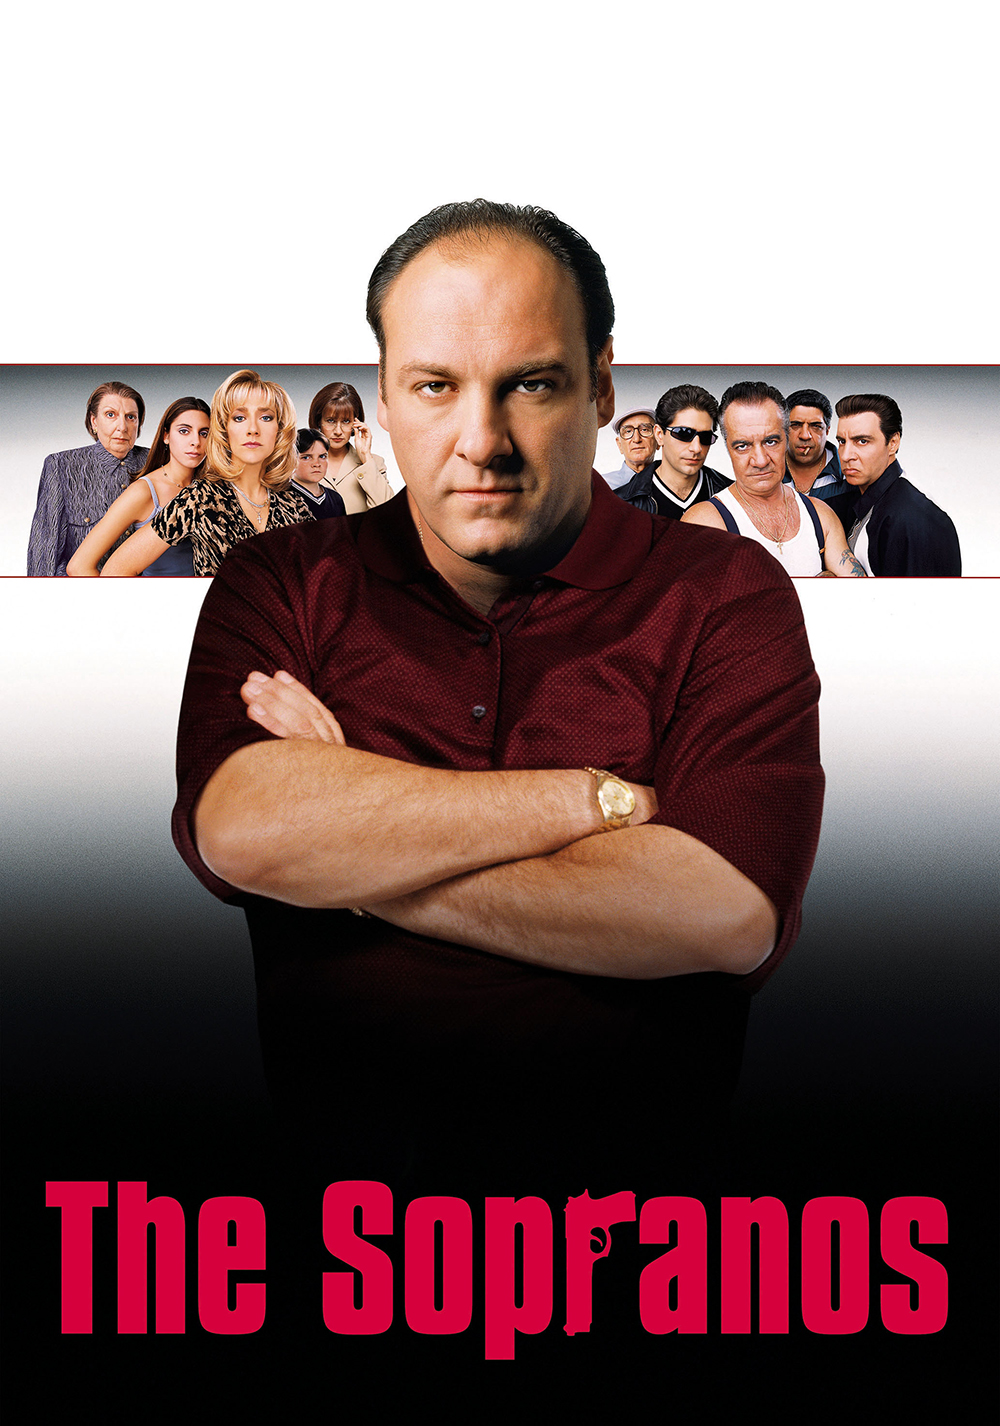 سوپرانوز (The Sopranos)